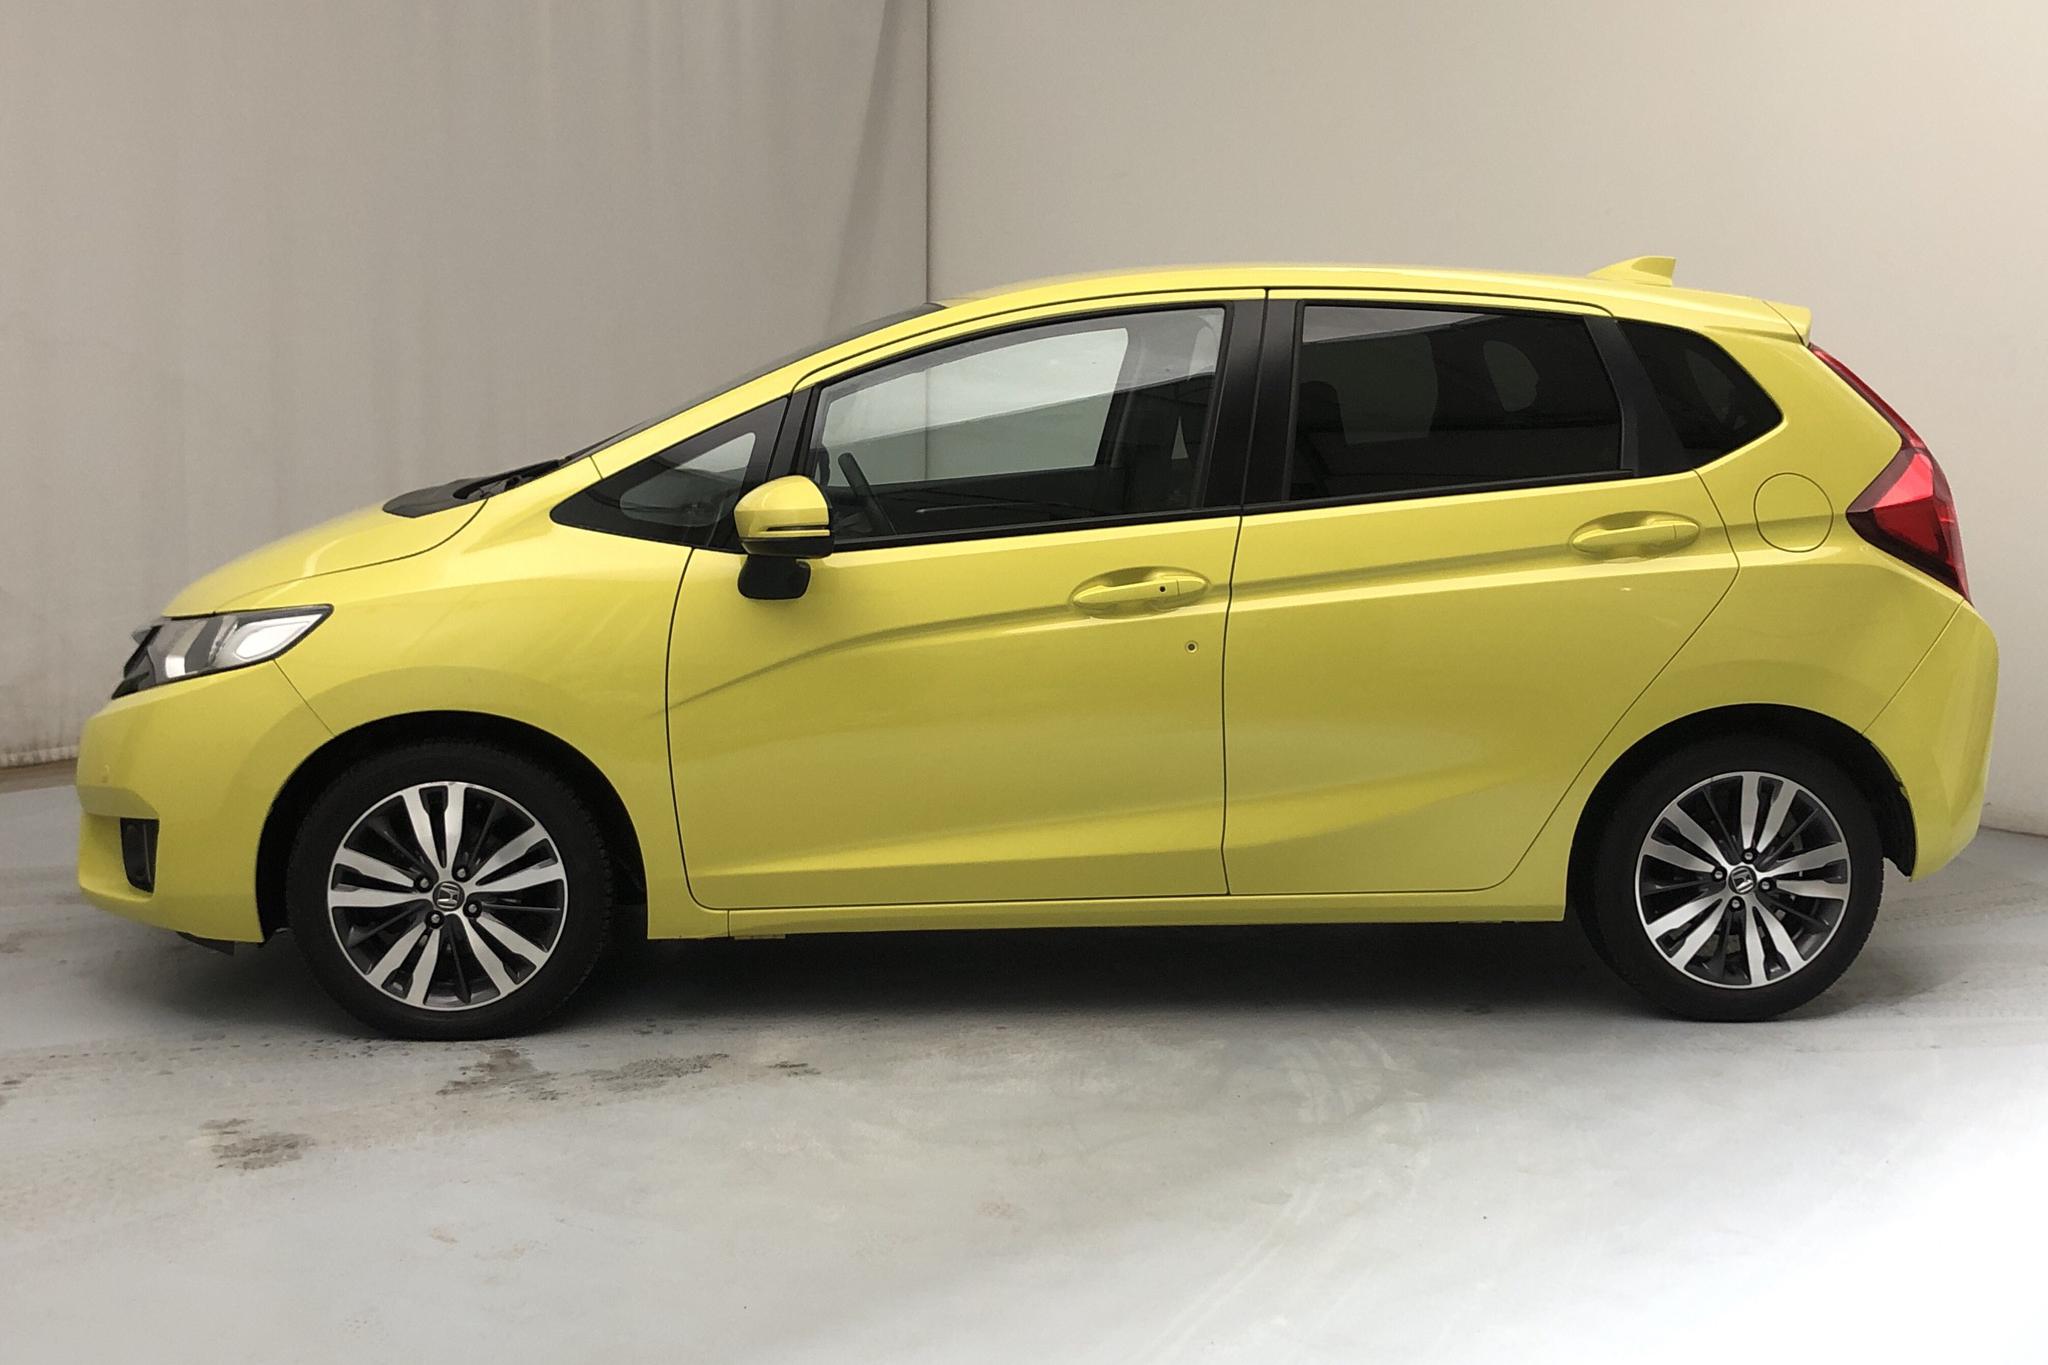 Honda Jazz 1.3 (102hk) - 47 630 km - Manual - yellow - 2016